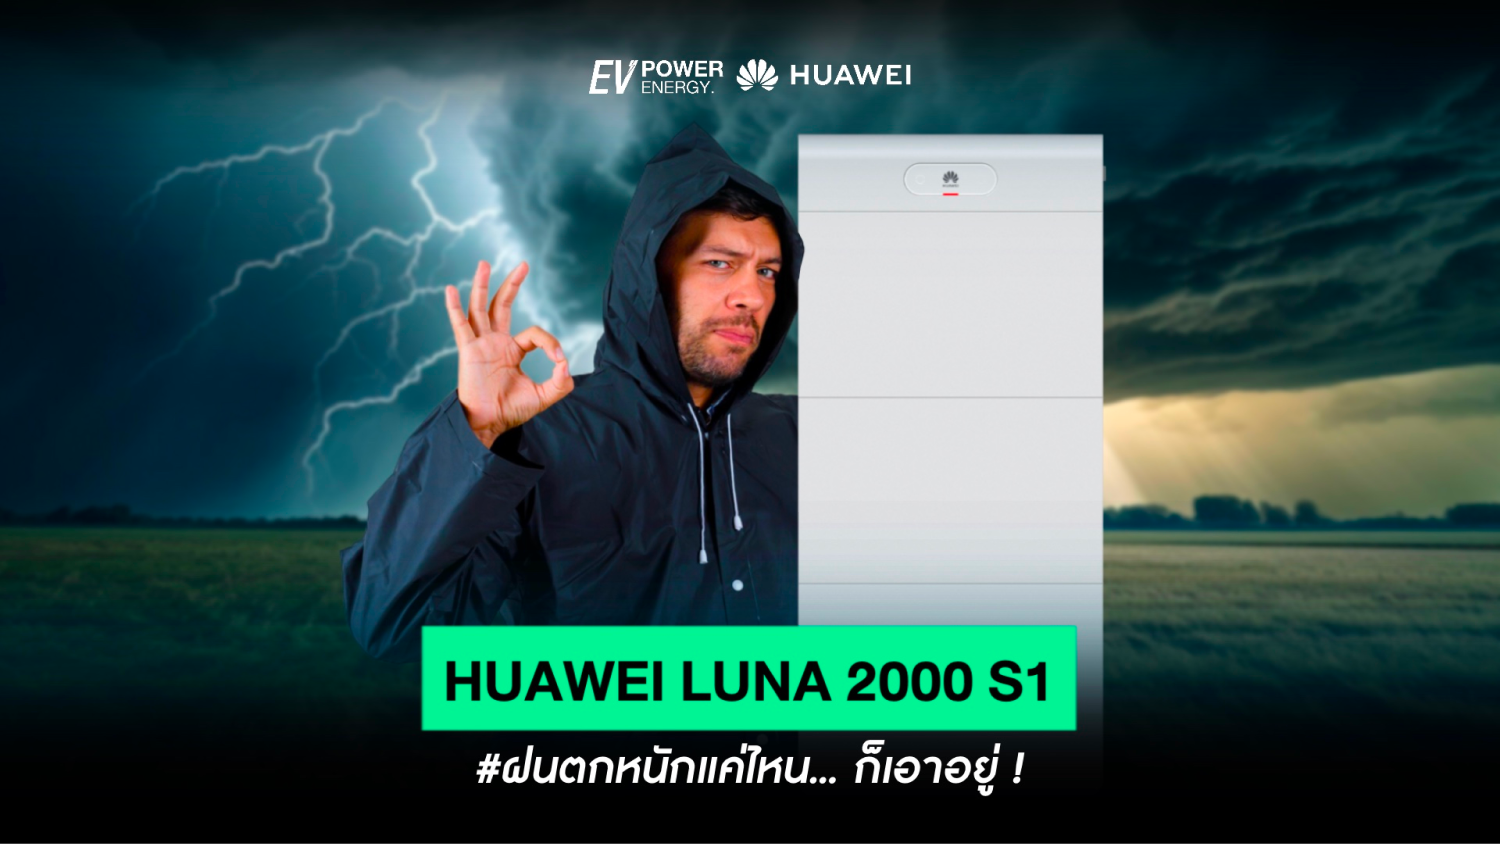 ฝนตกหนักแค่ไหน Huawei LUNA 2000 S1 ก็เอาอยู่